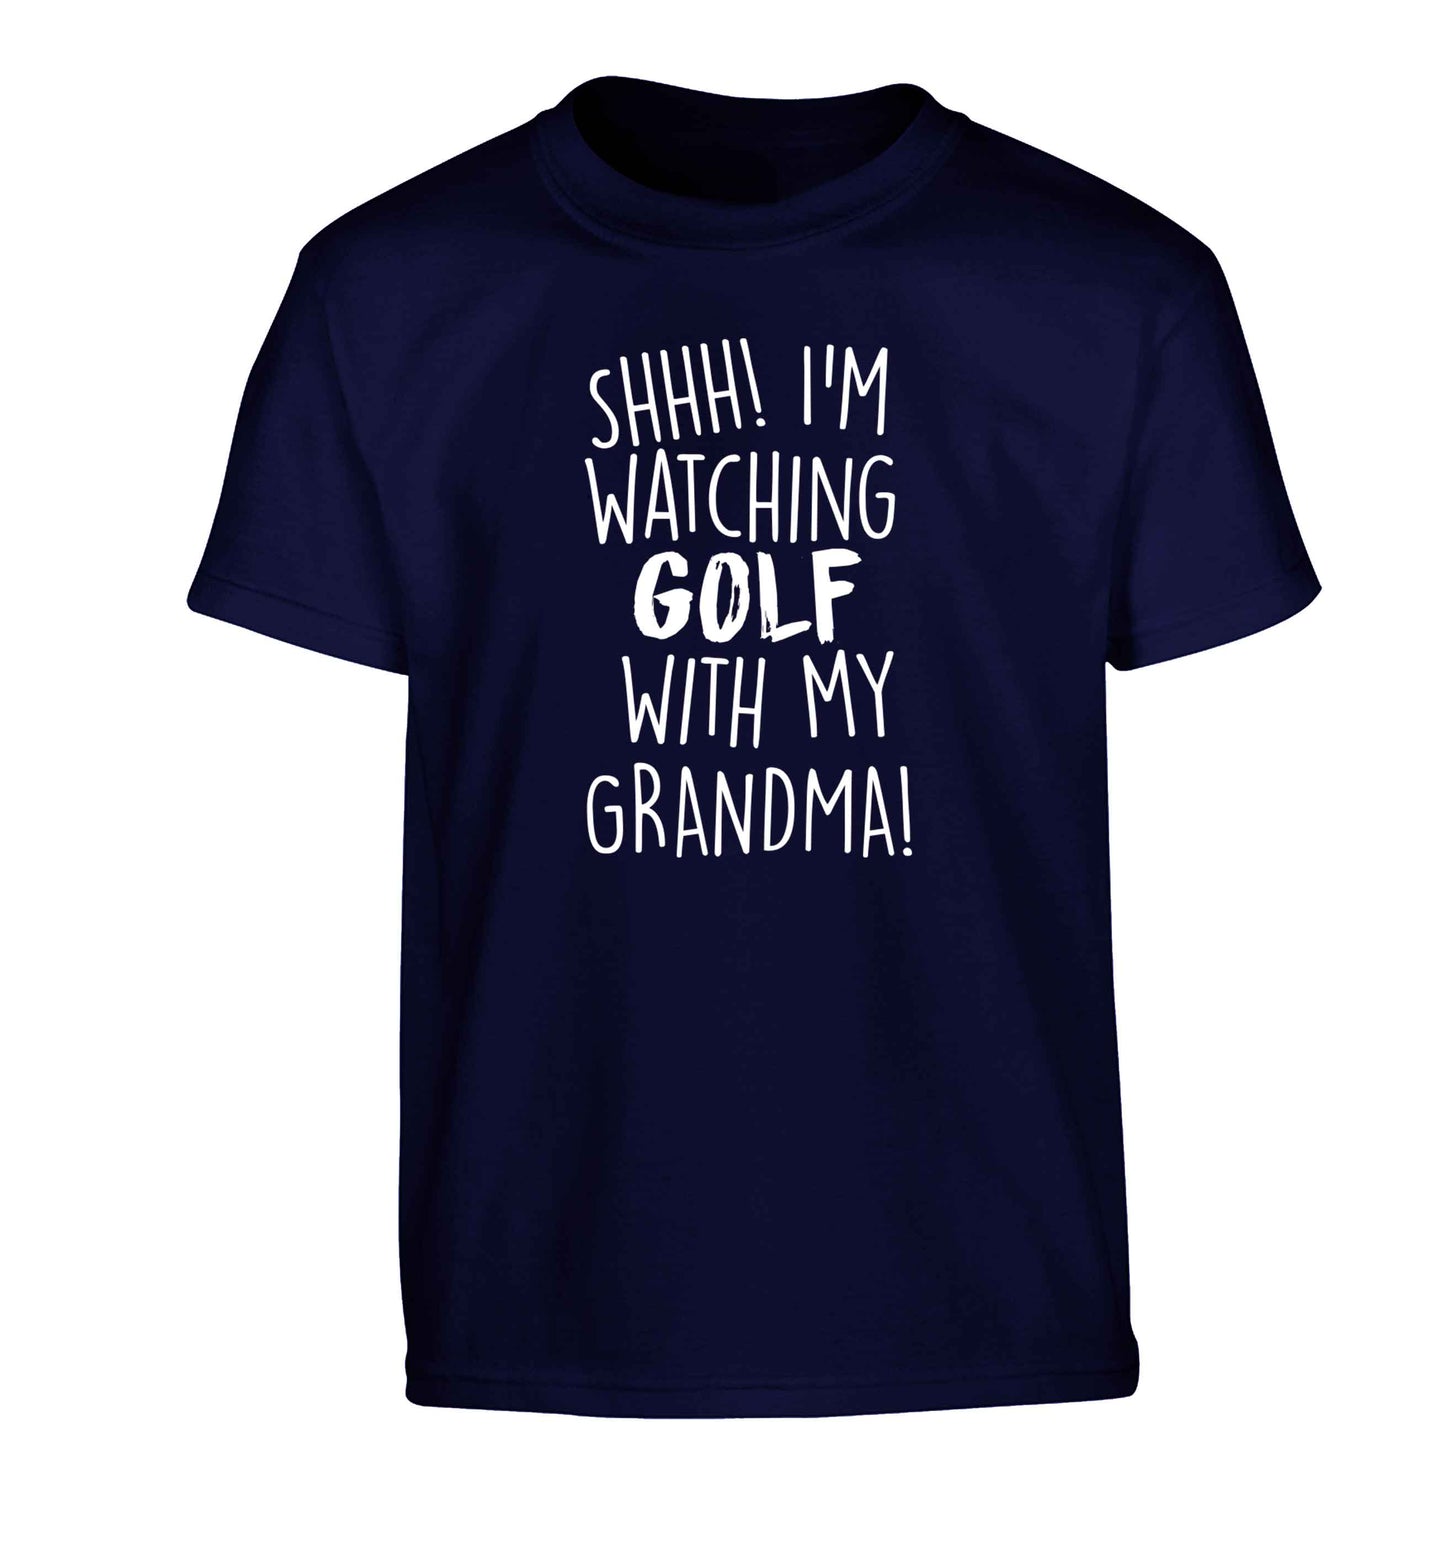 Shh I'm watching golf with my grandma Children's navy Tshirt 12-13 Years